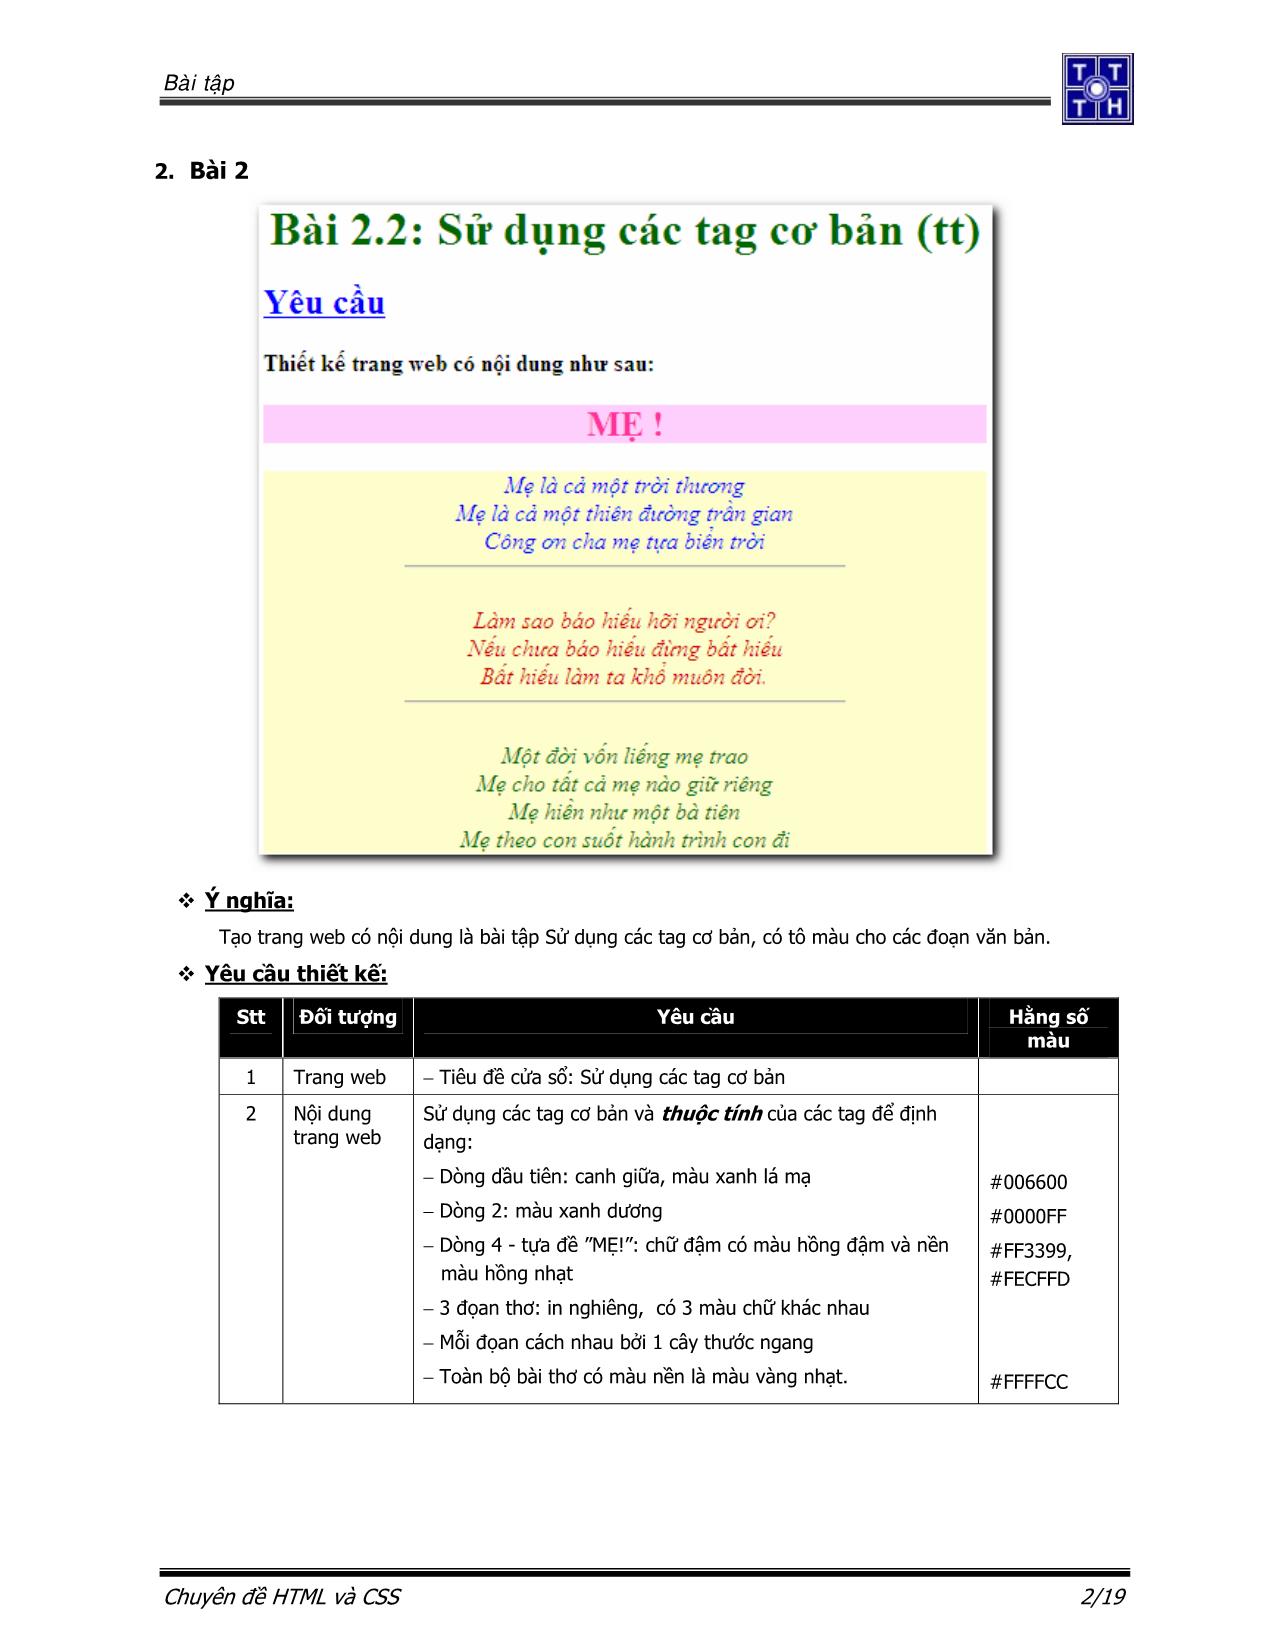 Bài tập Ngôn ngữ HTML và CSS trang 3